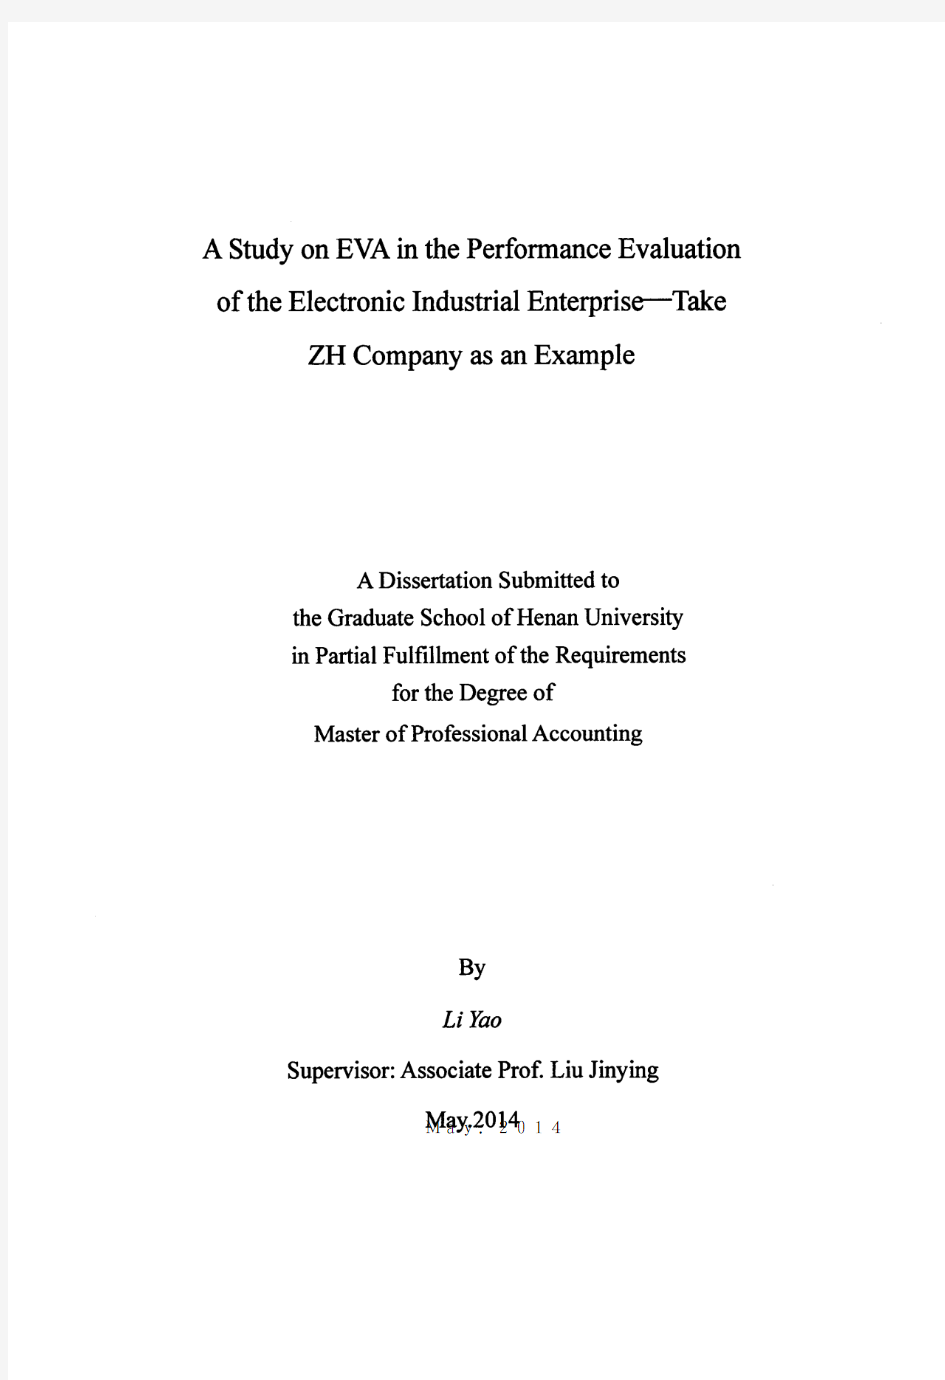 基于EVA视角的电子工业企业业绩评价研究——以ZH公司为例